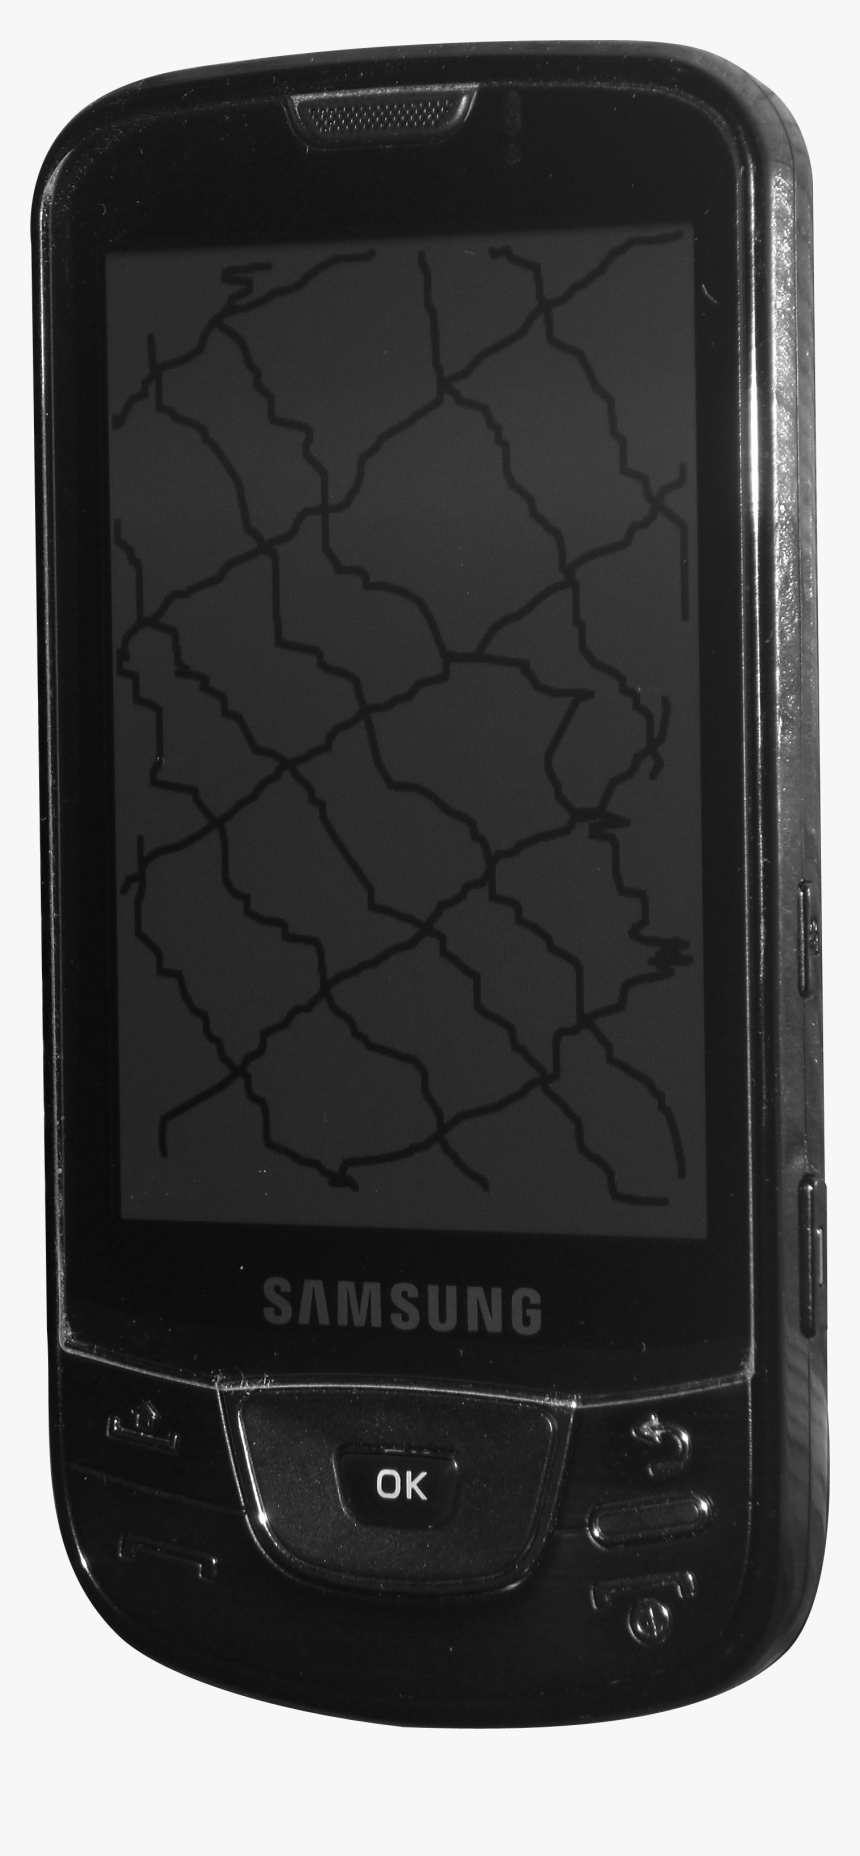 Samsung I7500 - Samsung I7500 Png, Transparent Png, Free Download